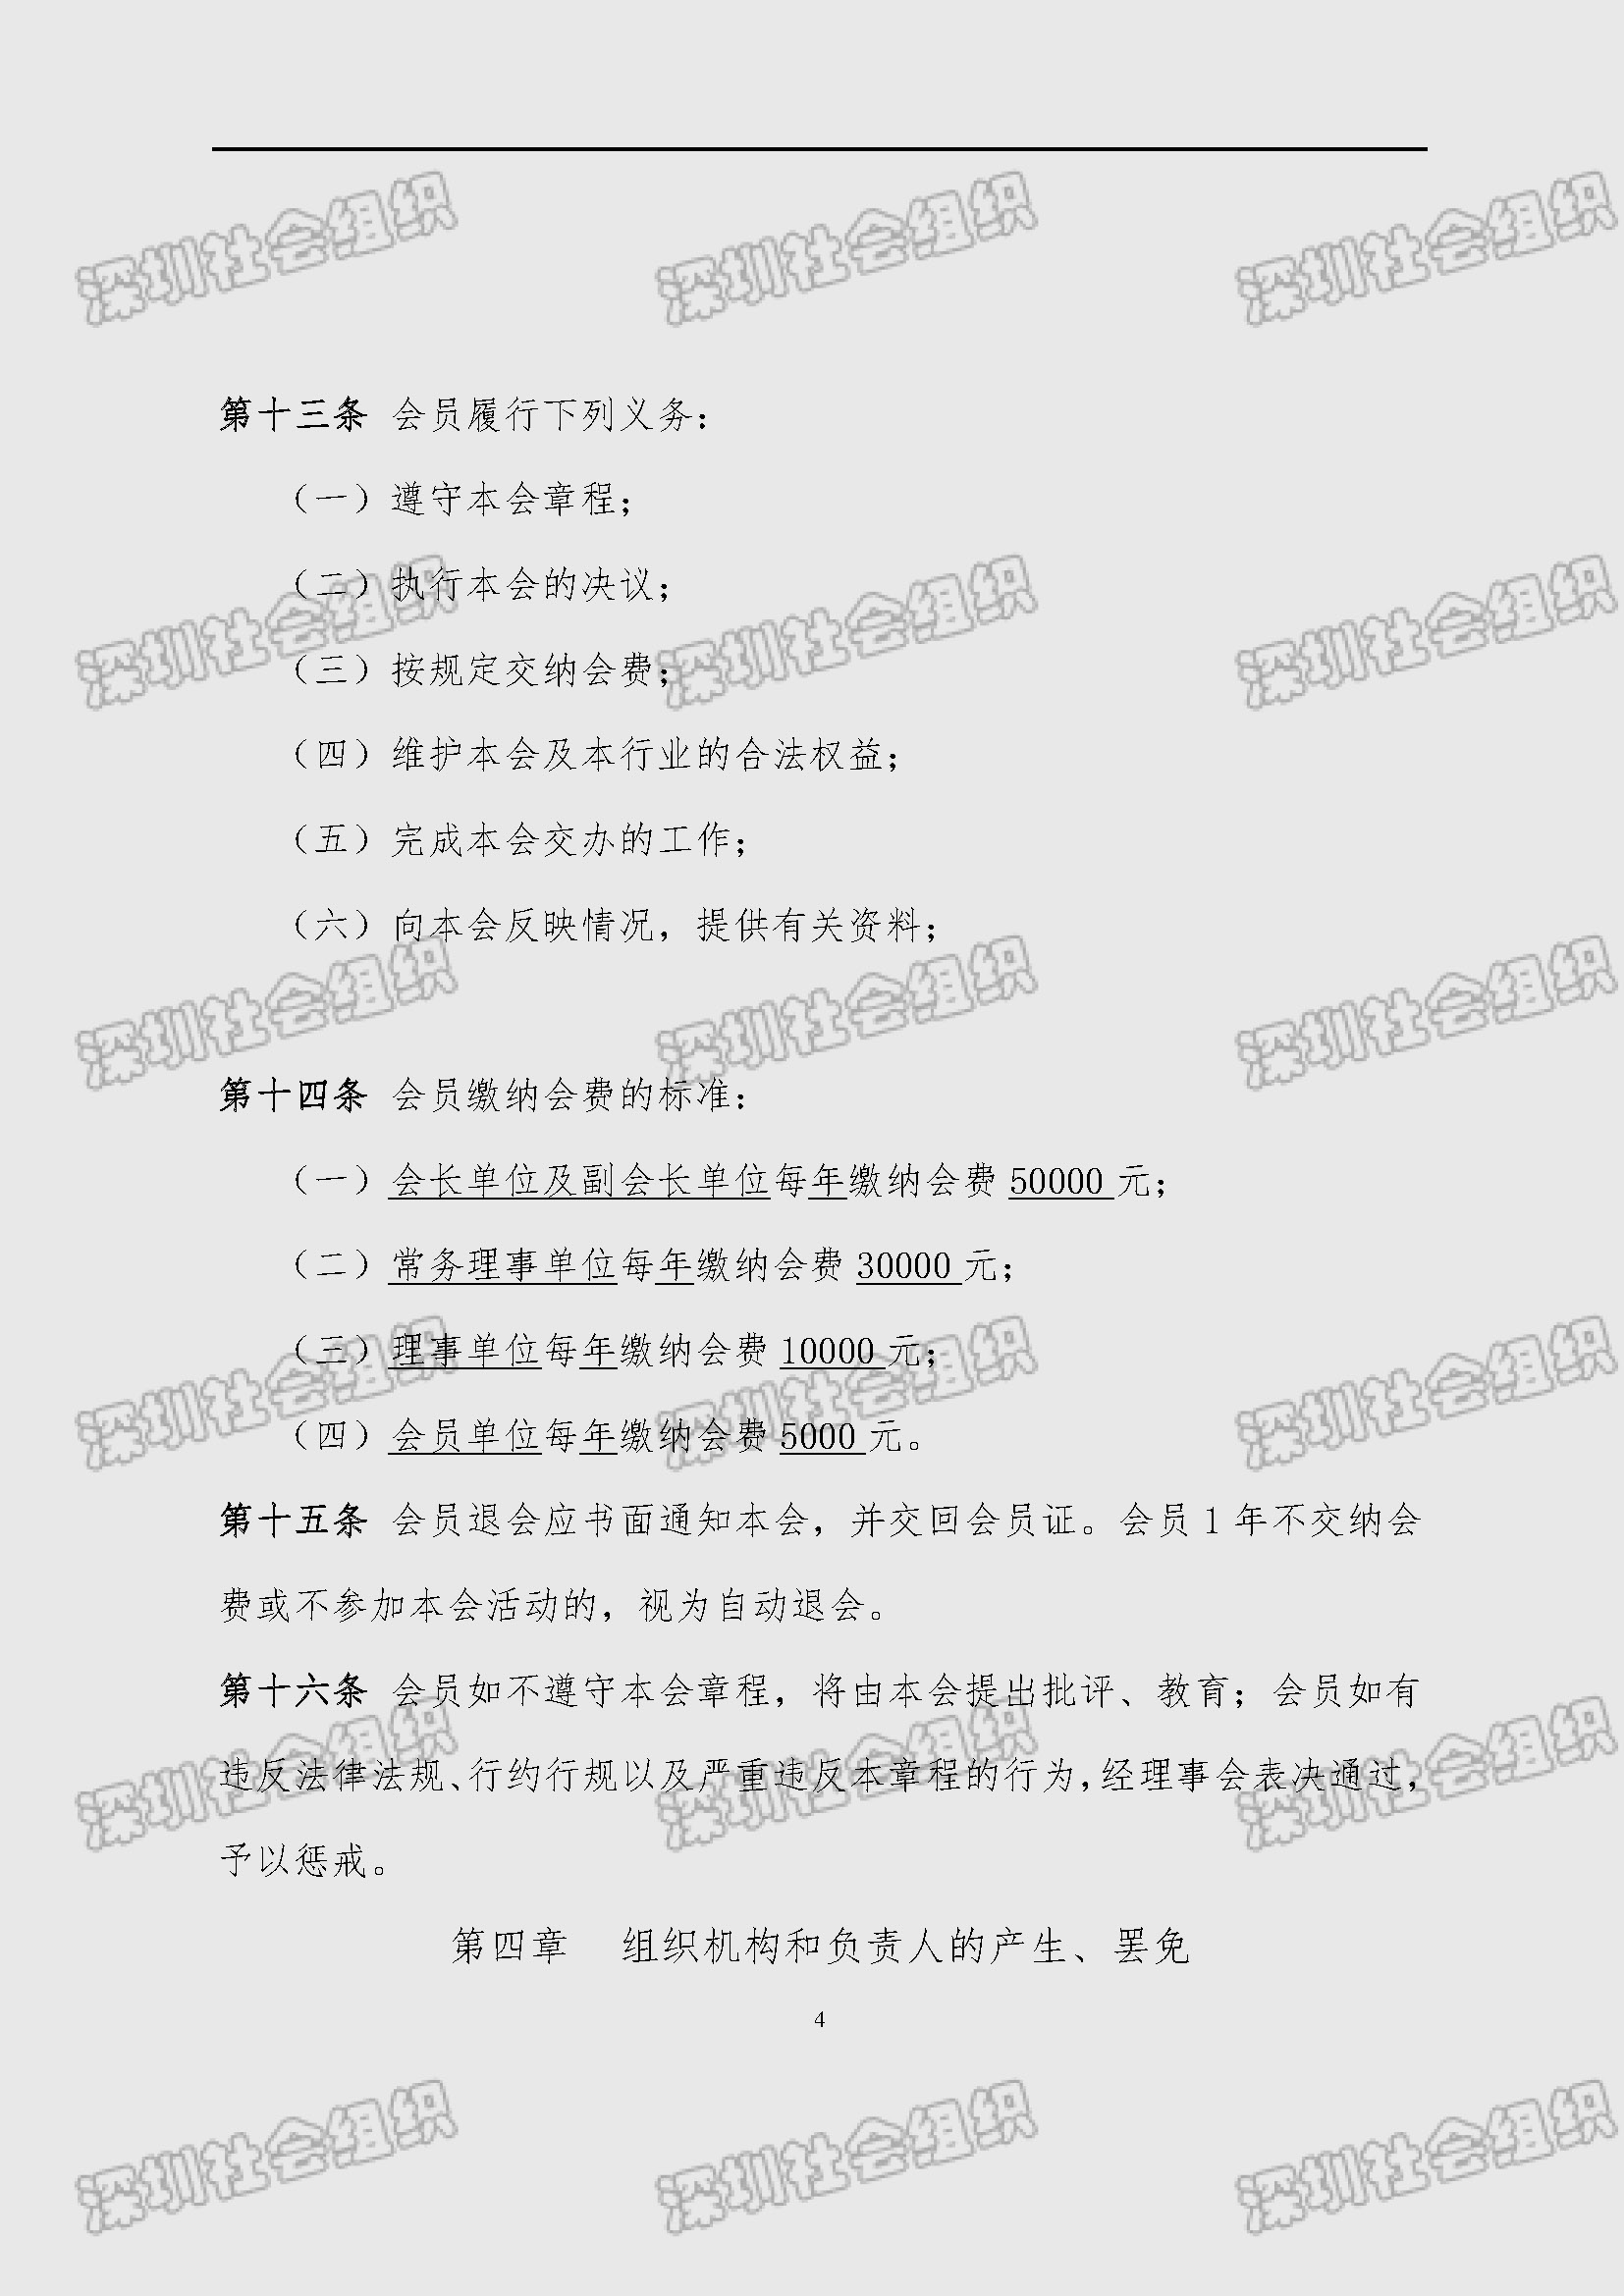 深圳市新材料行业协会章程_页面_04.jpg